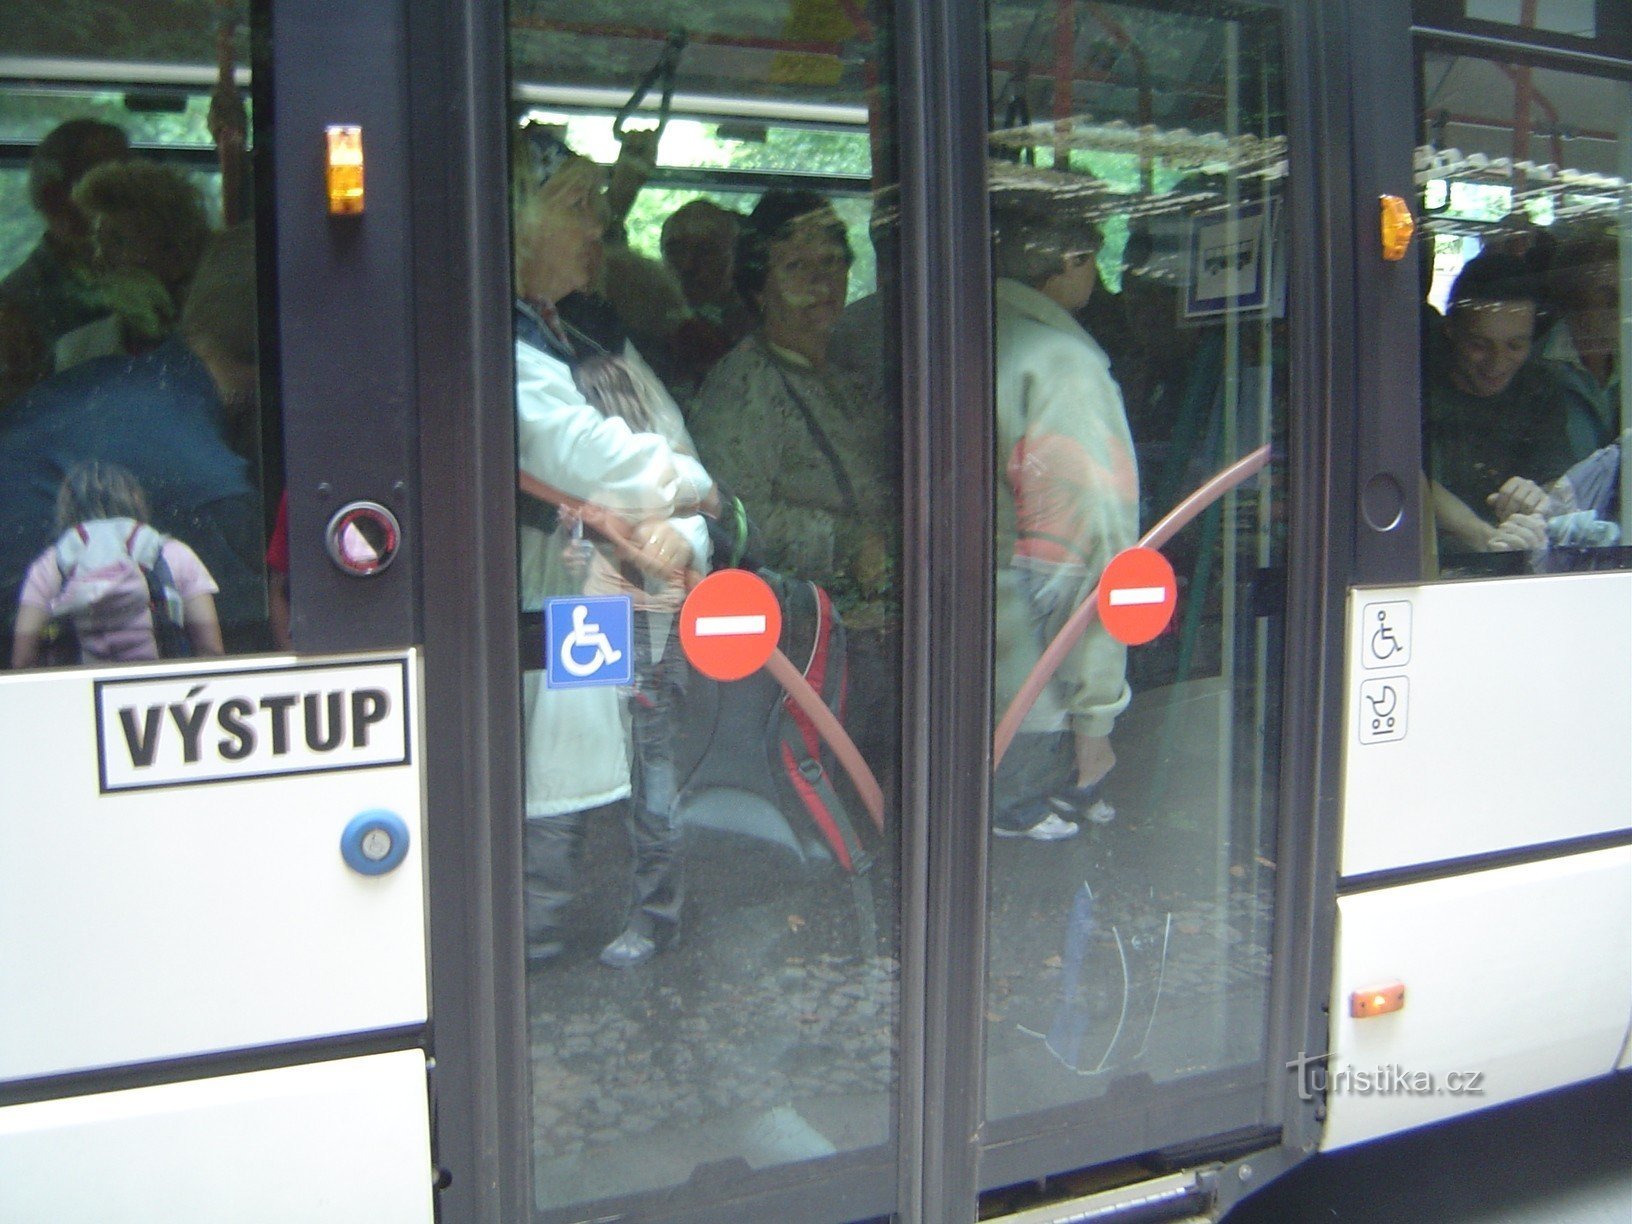 Bus van Děčín naar Hřensk - iets voller